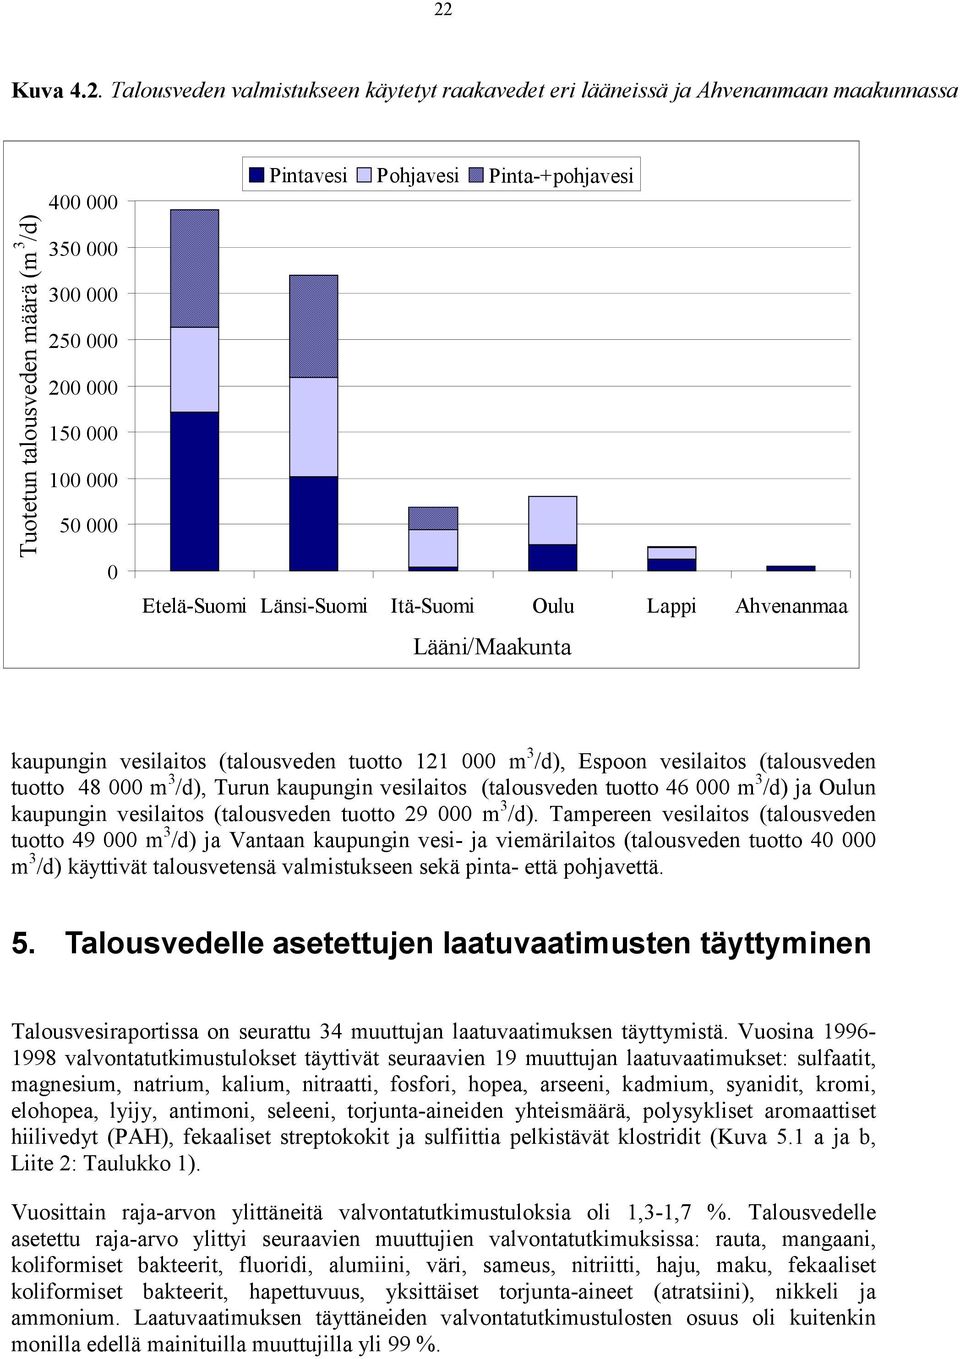 tuotto 48 000 m 3 /d), Turun kaupungin vesilaitos (talousveden tuotto 46 000 m 3 /d) ja Oulun kaupungin vesilaitos (talousveden tuotto 29 000 m 3 /d).